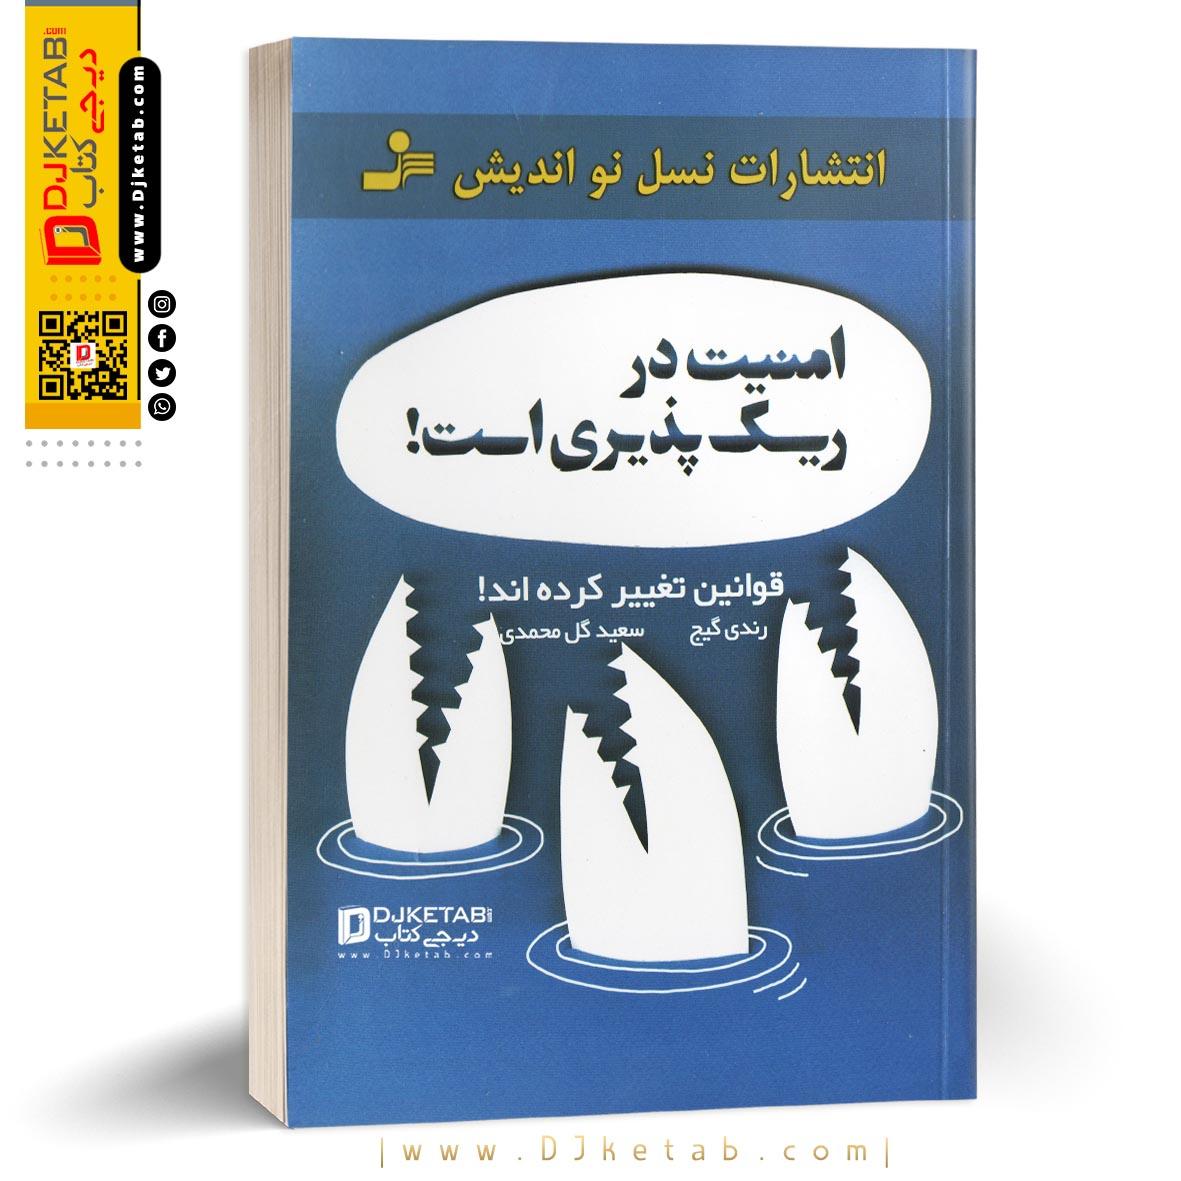 کتاب امنیت در ریسک پذیری است!, ترجمه سعید گل محمدی